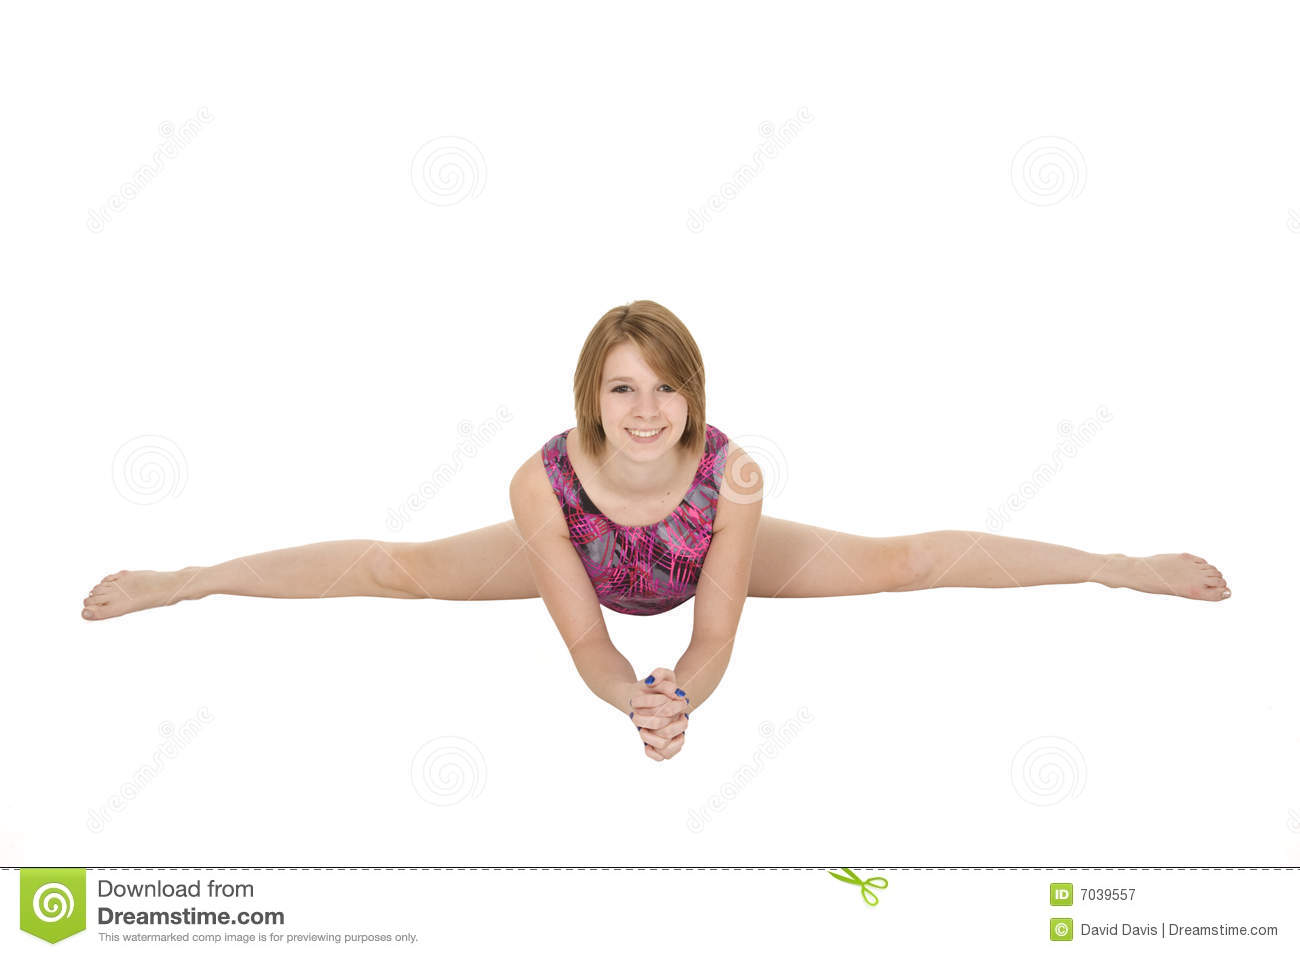 natural gymnastics